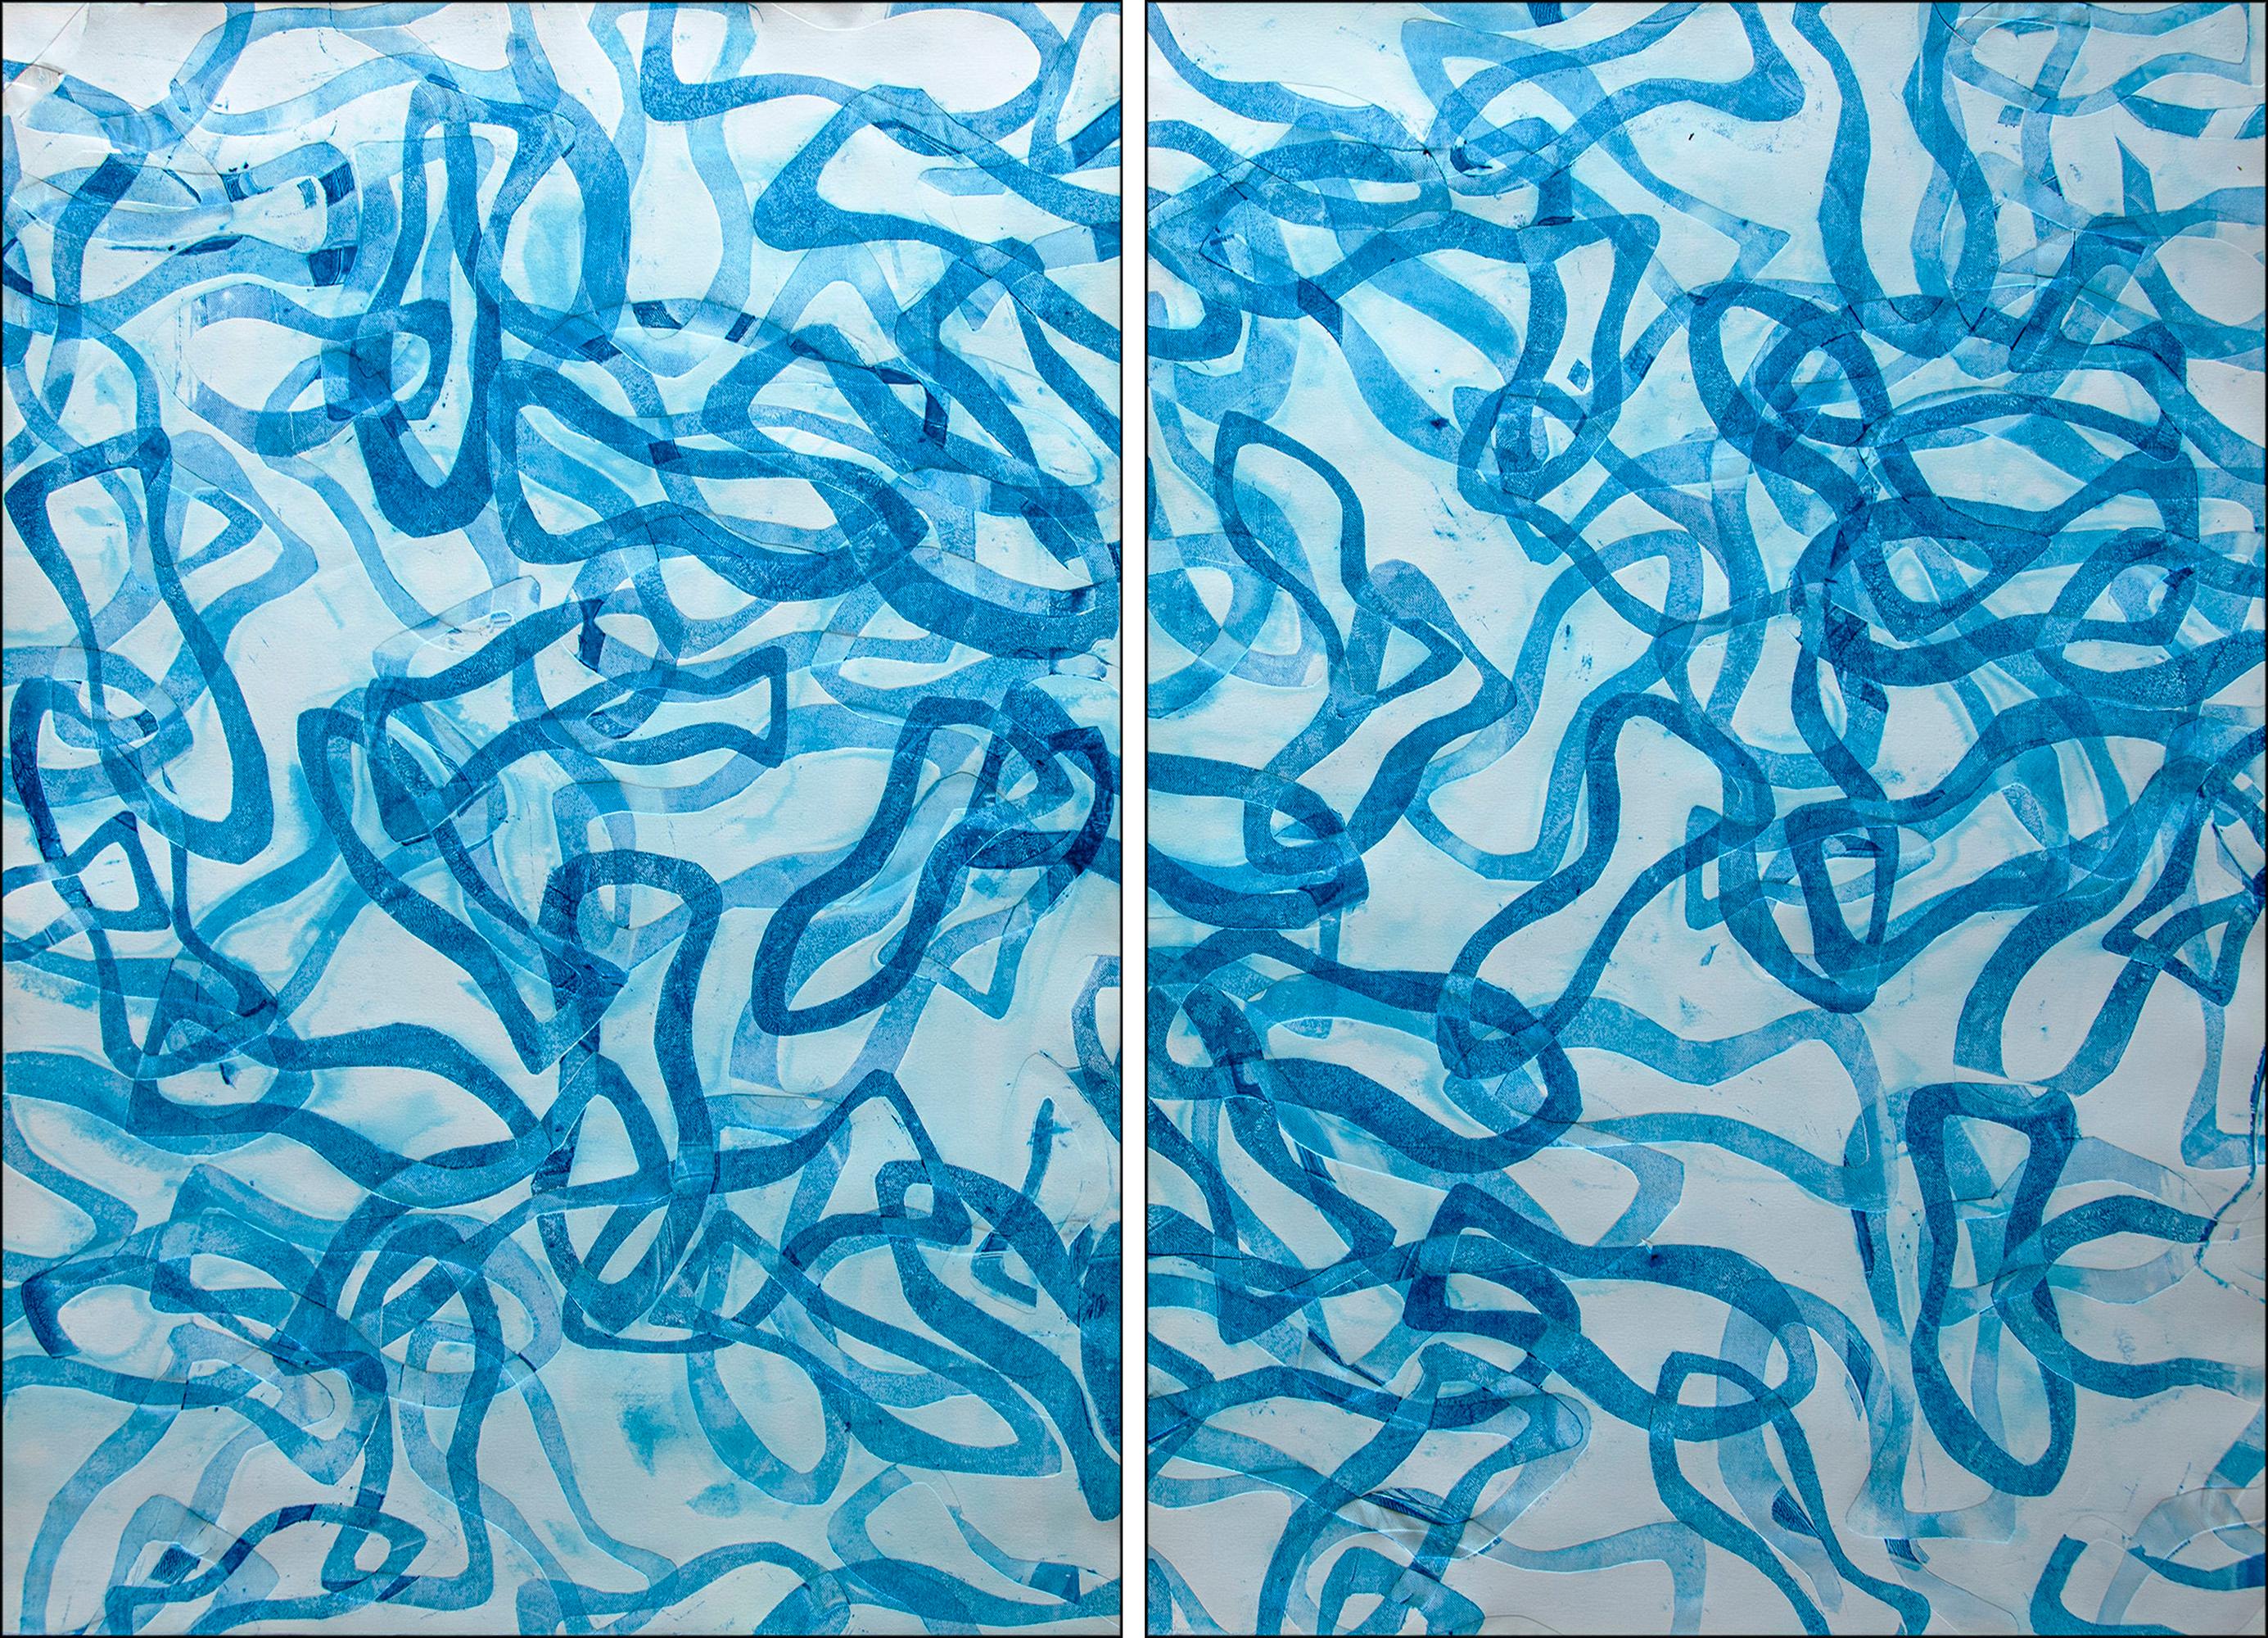 Enric Servera Animal Painting – Blau des Blauen Blauen, Abstraktes Fischformen- Diptychon, sich überlagernde Formen, Mittelmeerraums